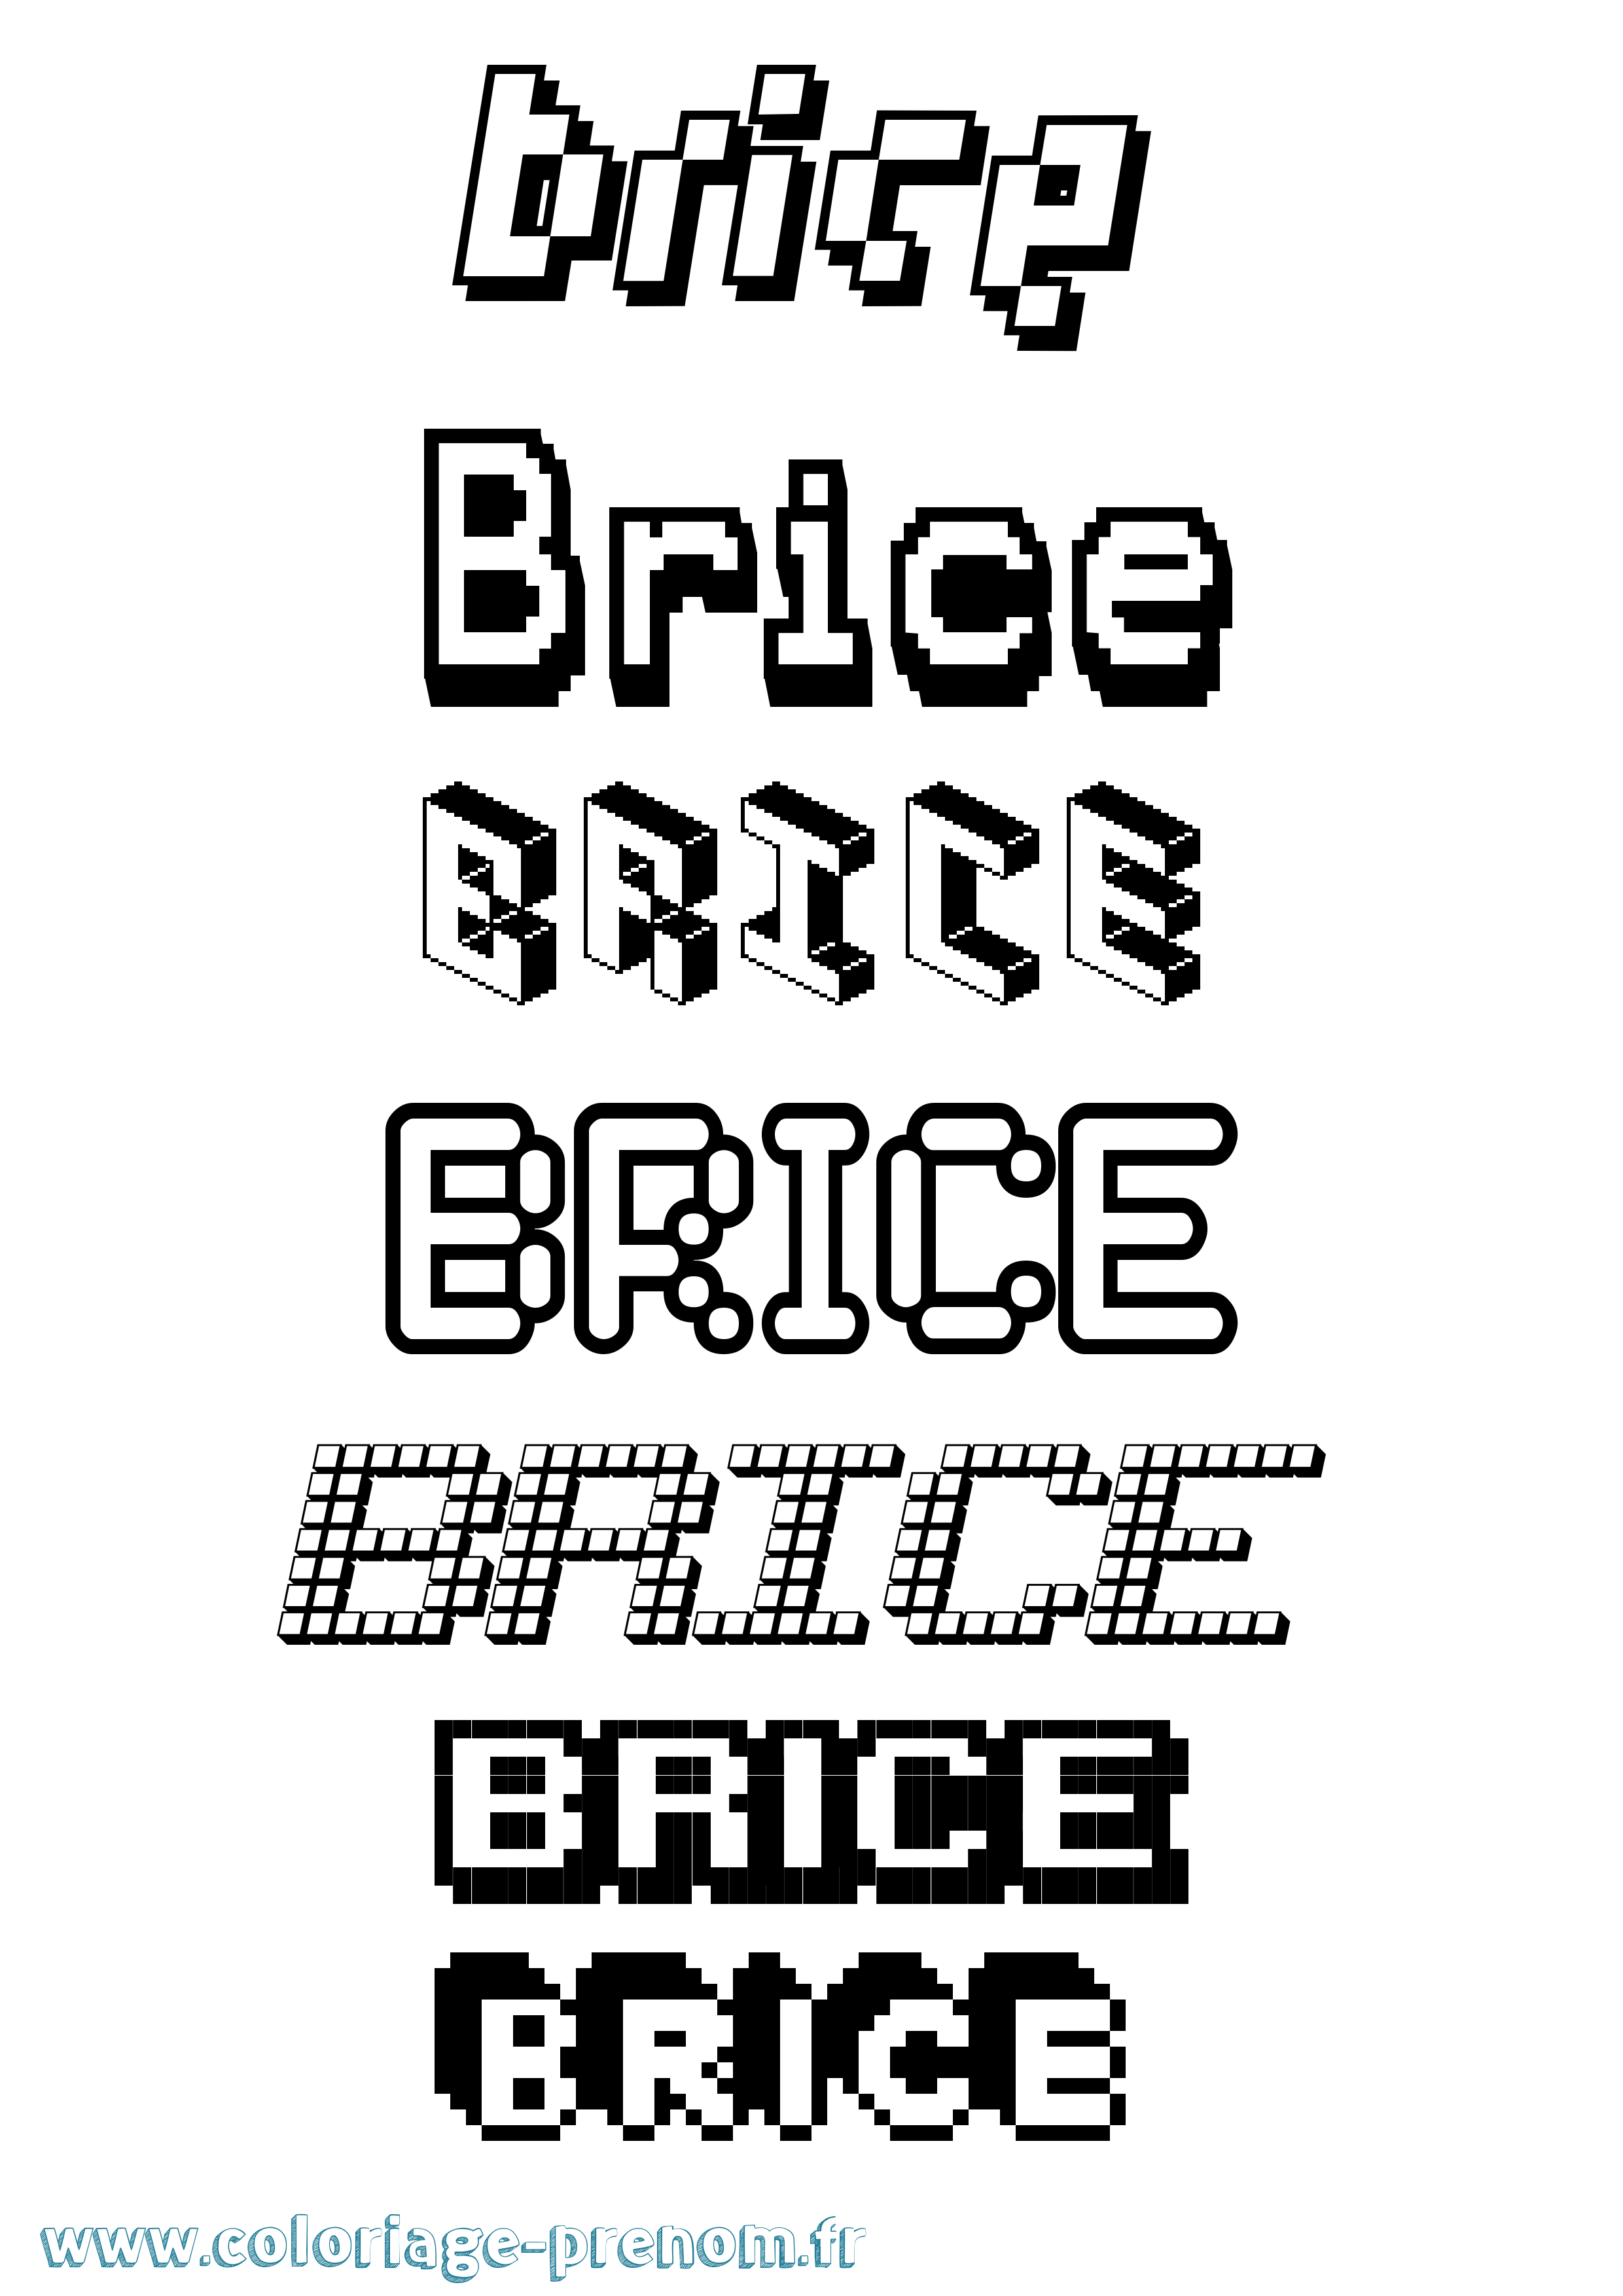 Coloriage prénom Brice Pixel